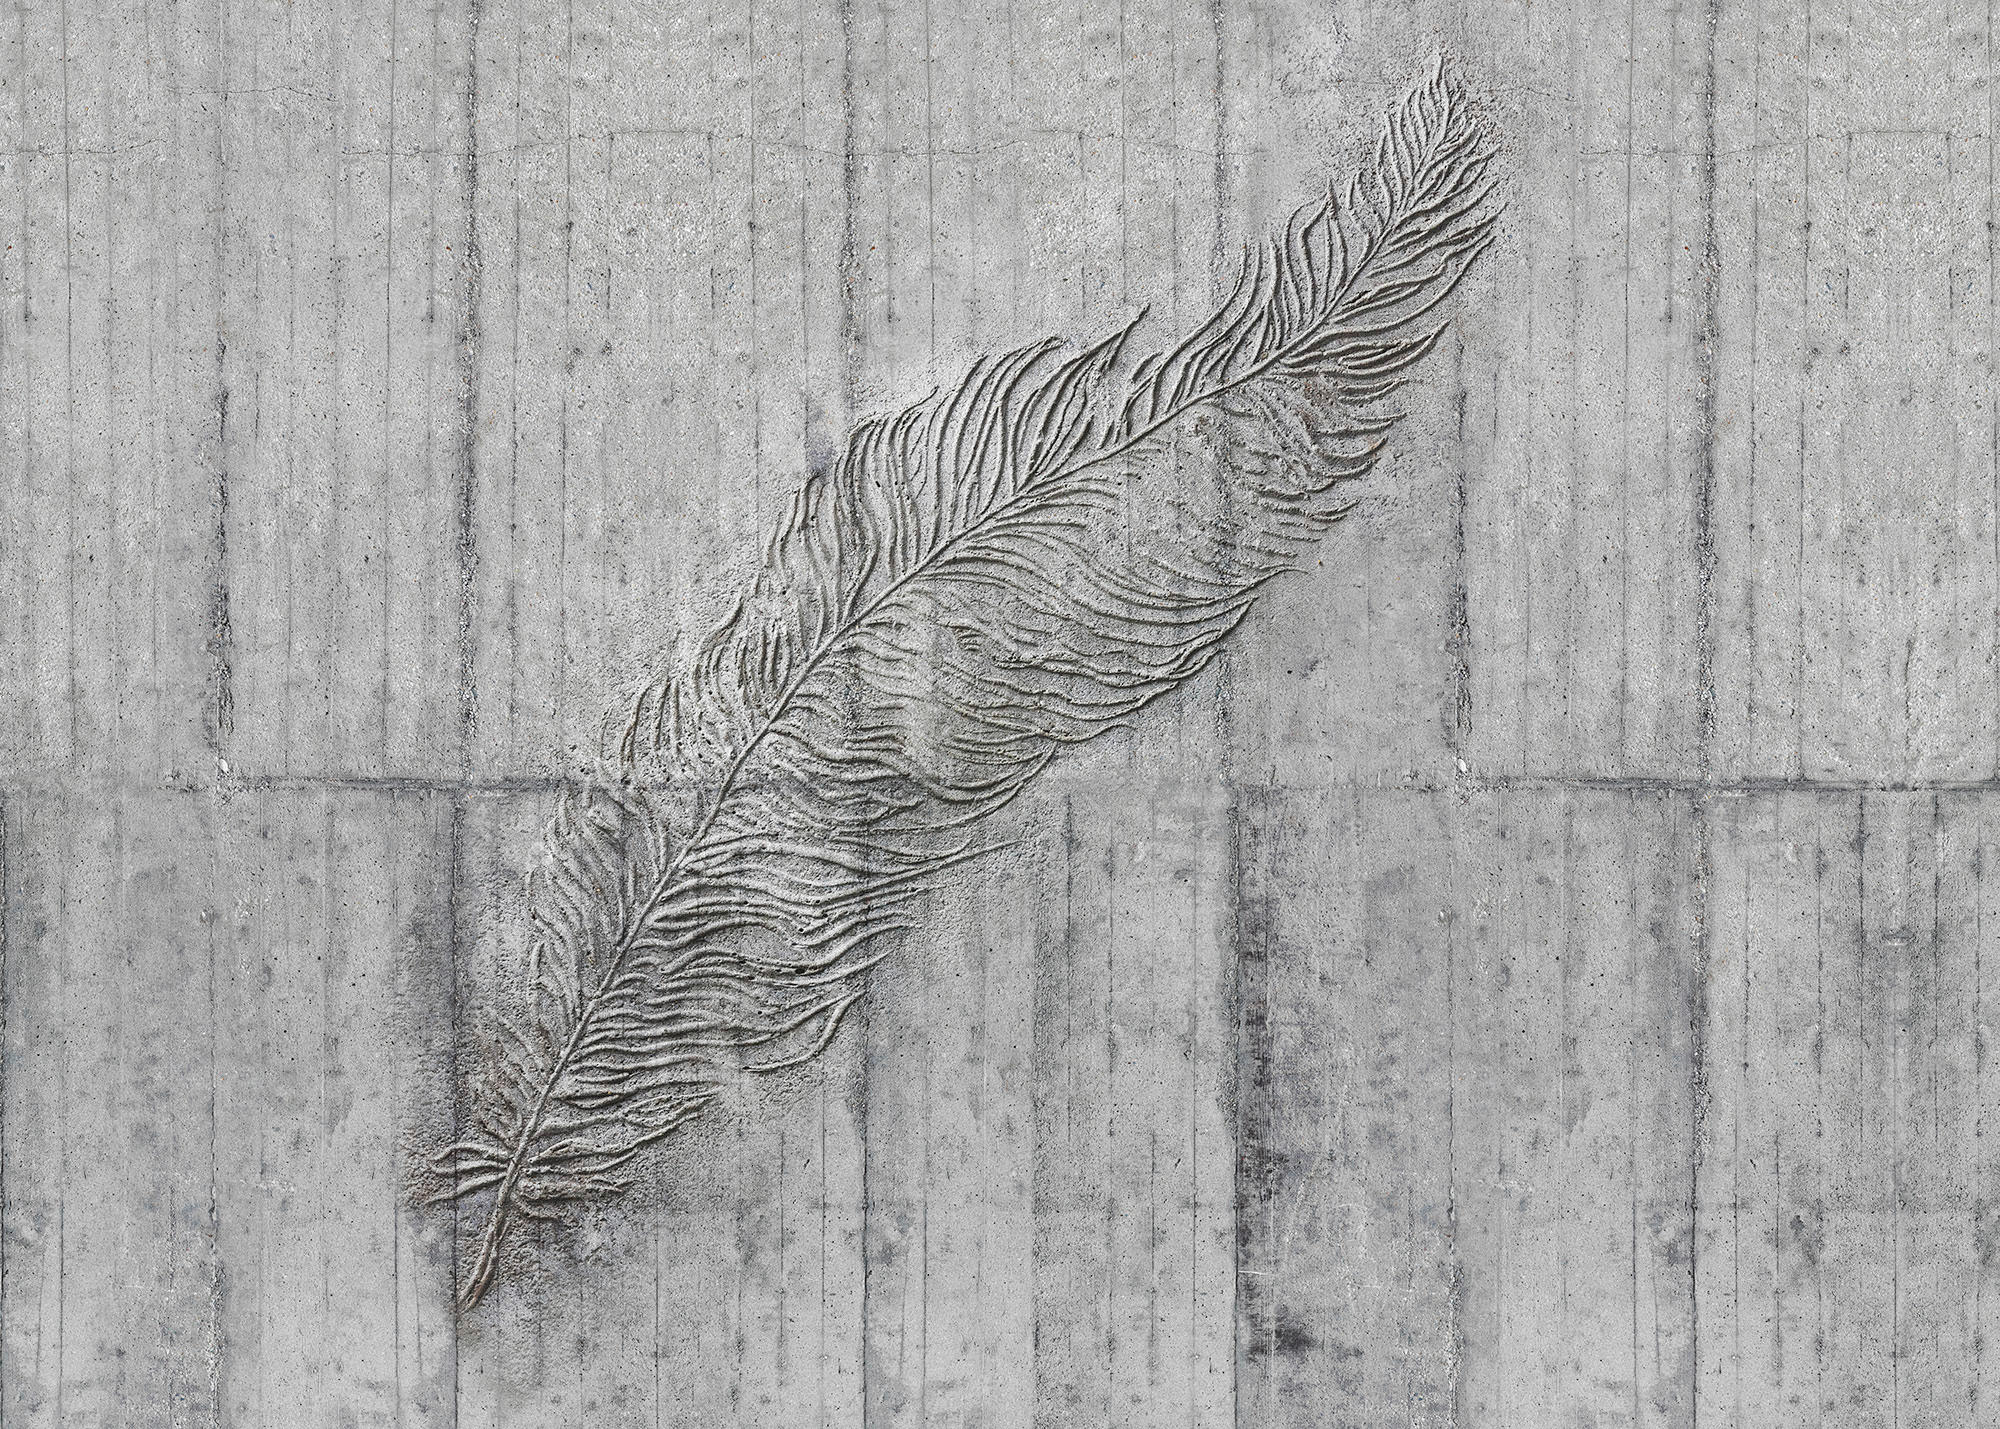 Komar Fototapete Concrete Feather B/L: ca. 350x250 cm